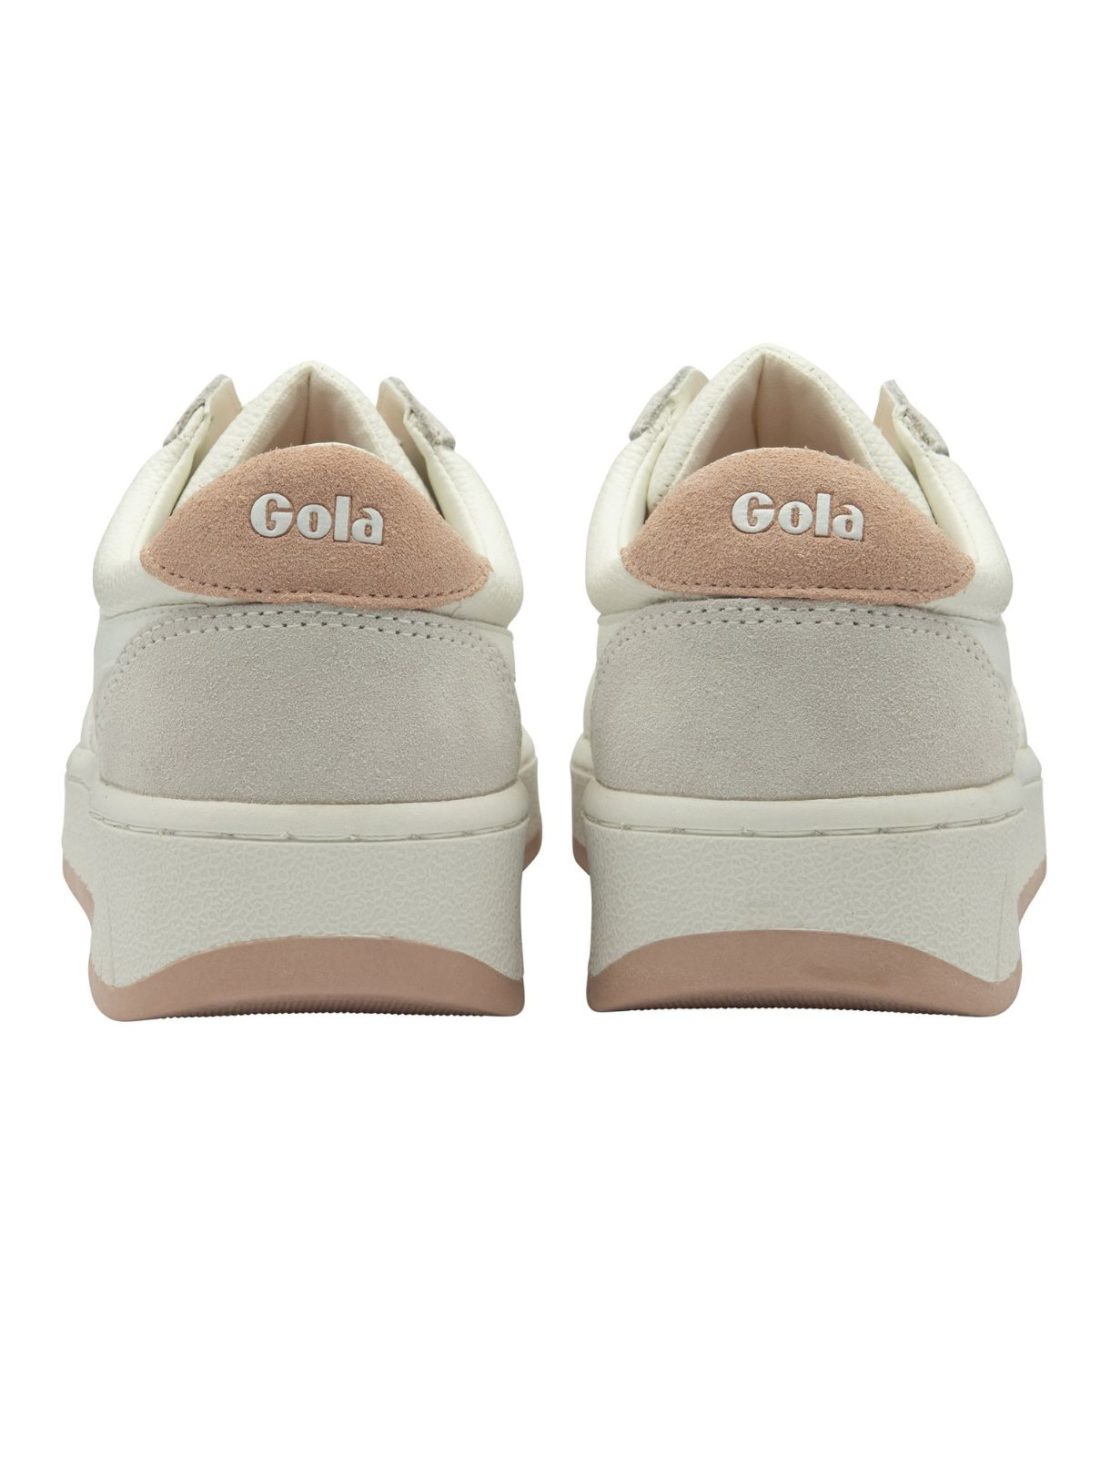 gola grandslamm 88 sneakers in white/pink pearl